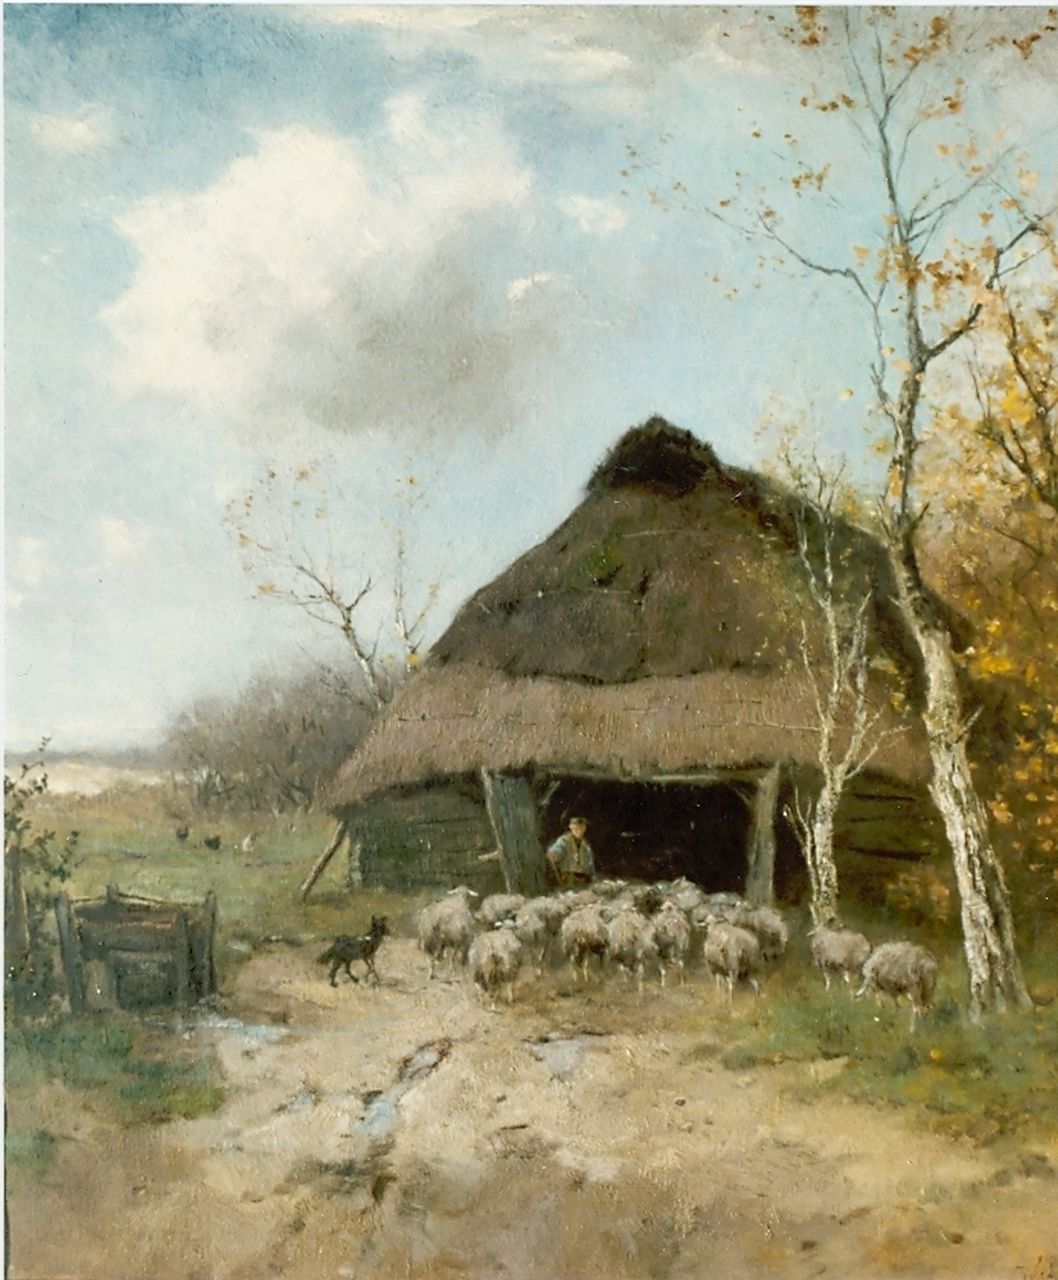 Scherrewitz J.F.C.  | Johan Frederik Cornelis Scherrewitz, Entering the sheepfold, oil on canvas 60.3 x 55.5 cm, signed l.r.